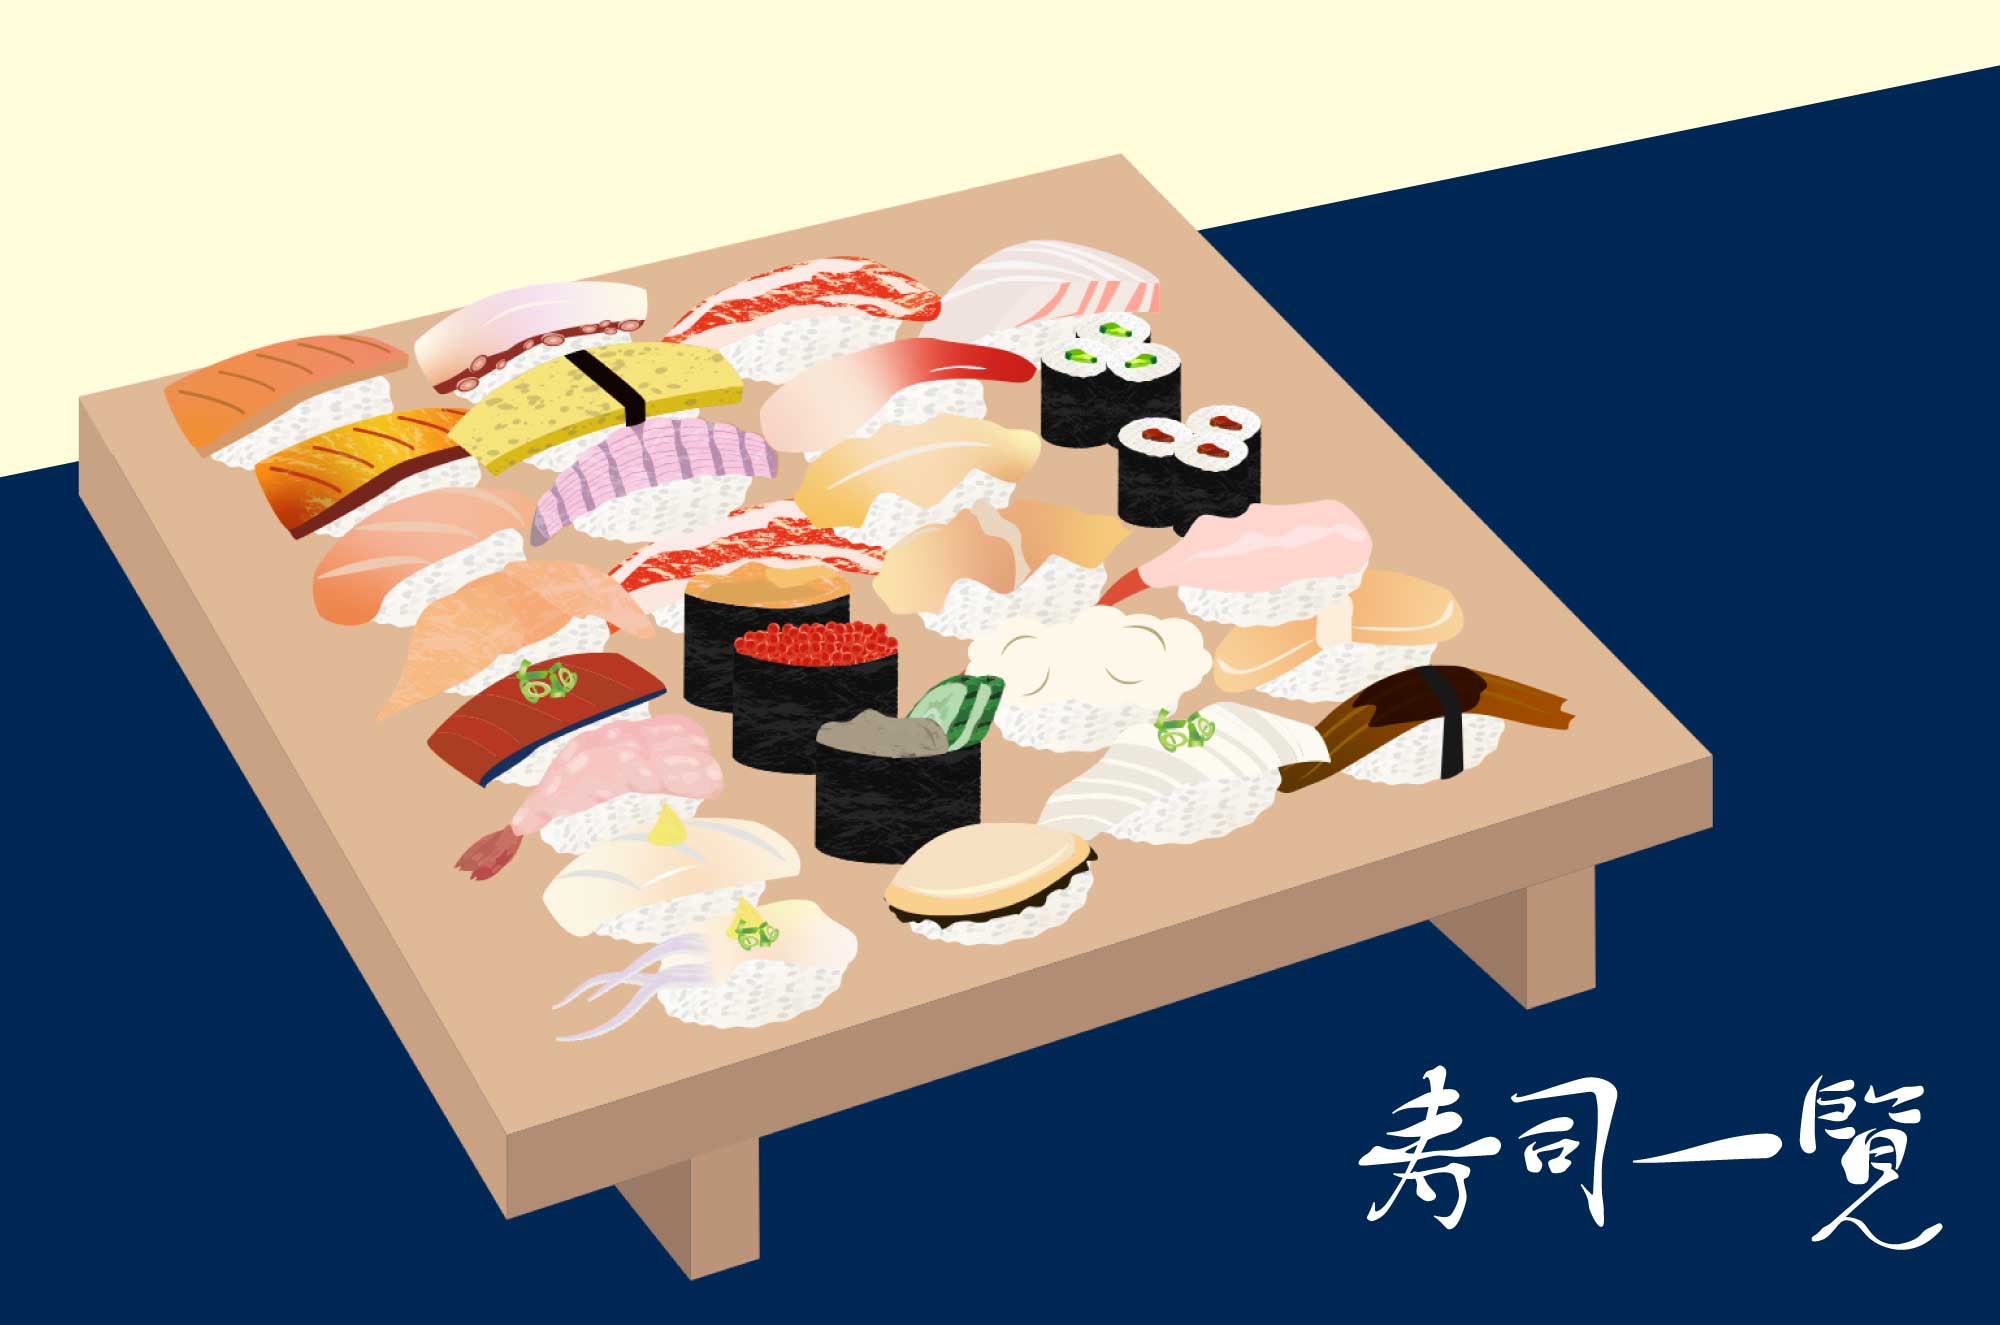 寿司のフリーイラスト 各ねた一覧和食の食べ物素材 チコデザ